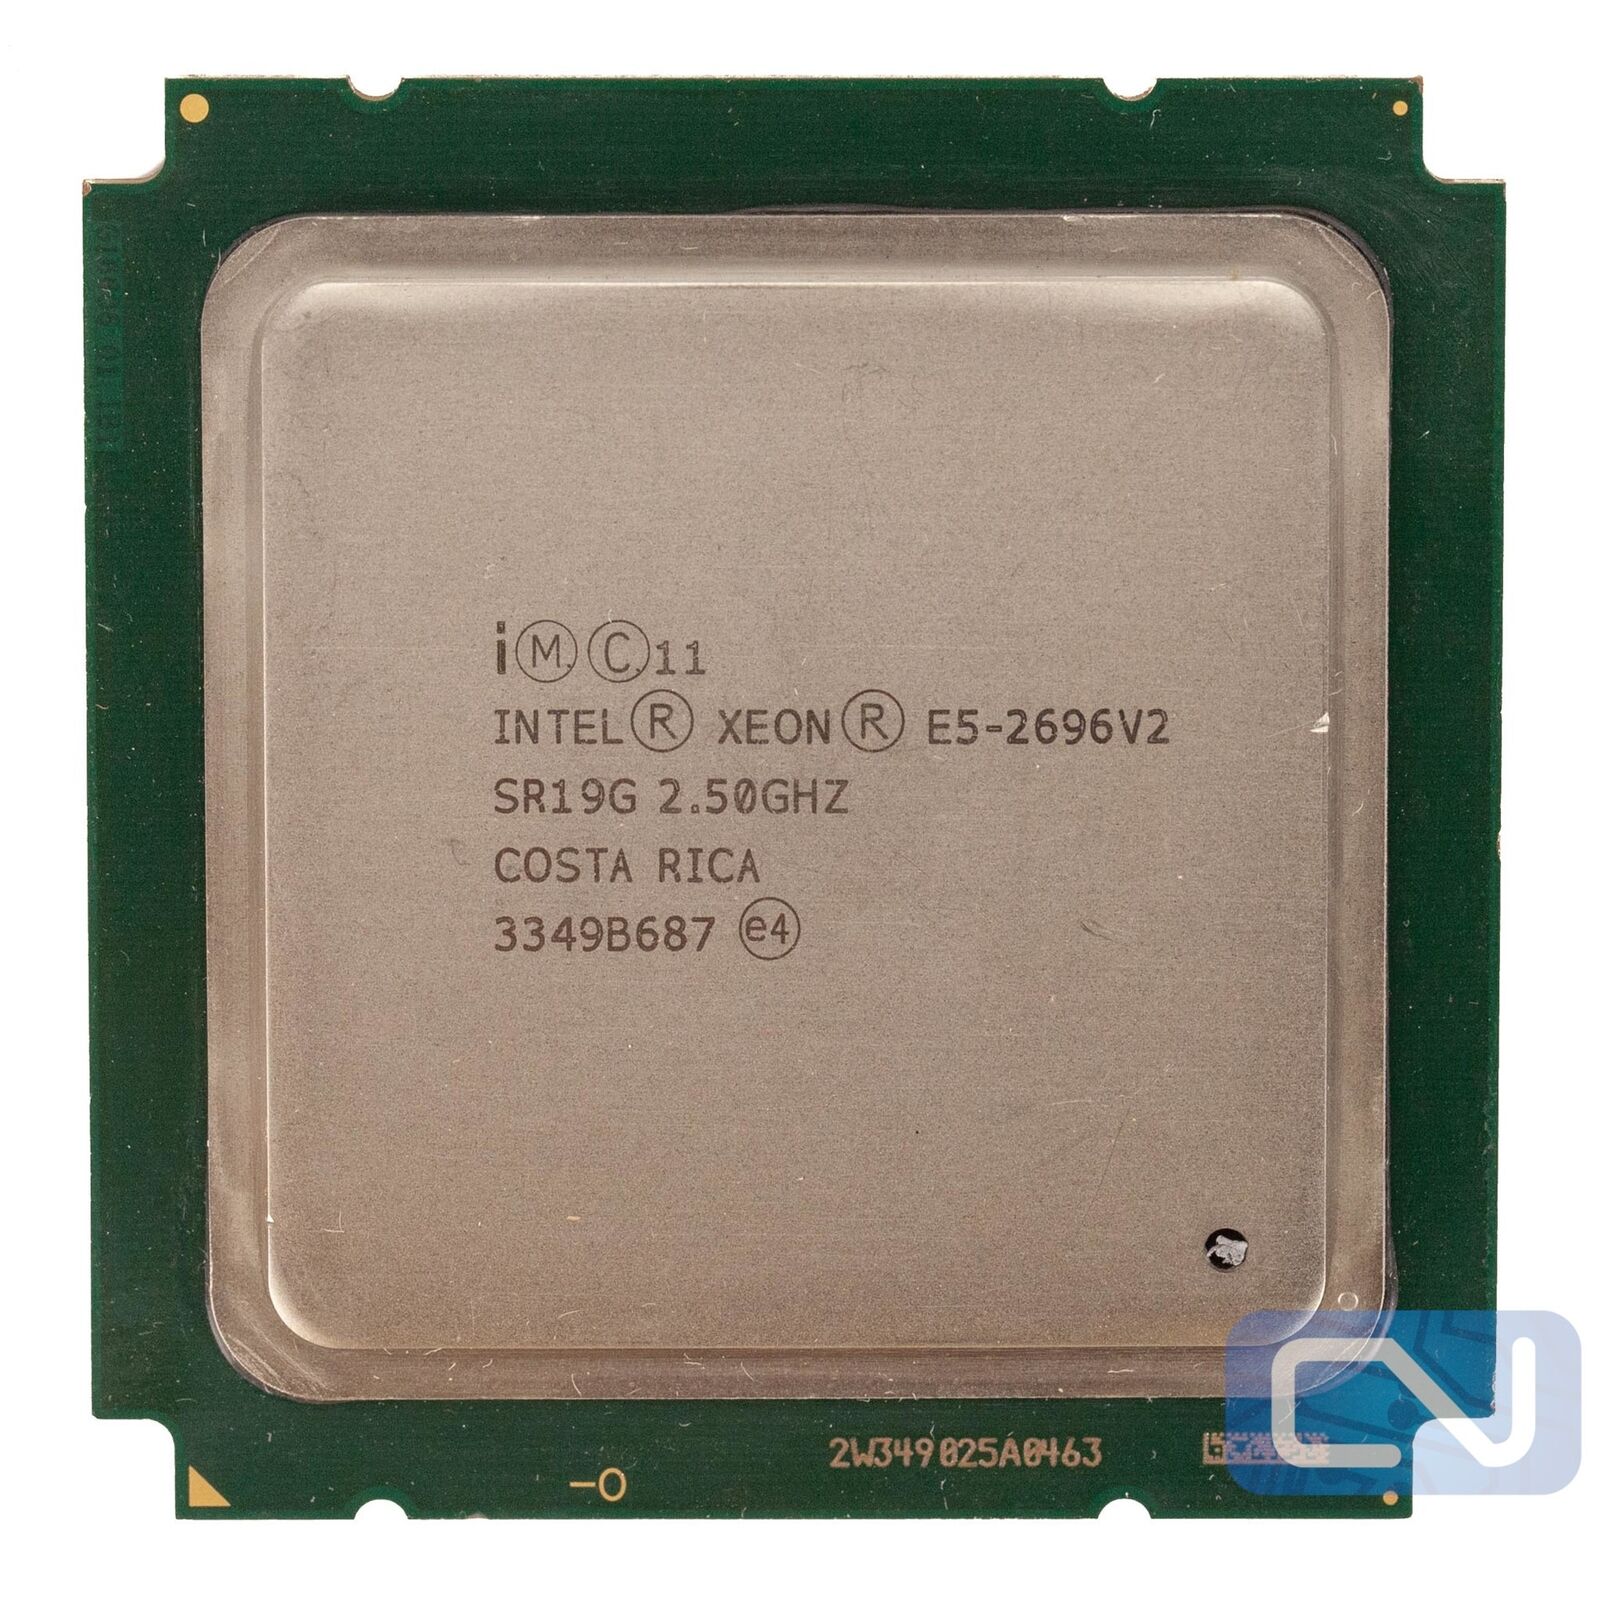 12 Core 2.5GHz 25MB Intel Xeon E5-2696 V2 SR19G LGA-2011 Server CPU 